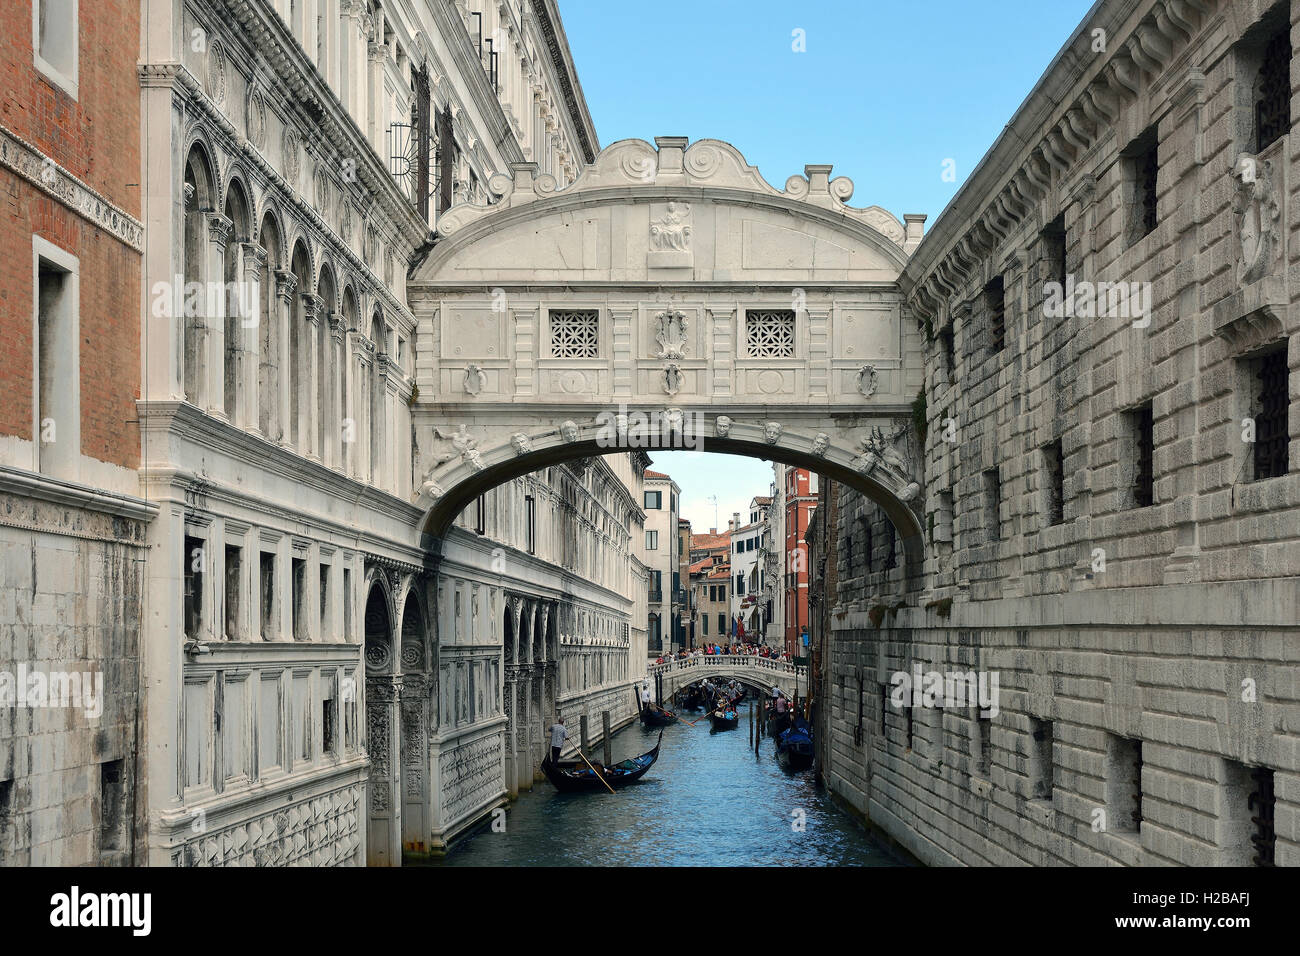 Ponte dei Sospiri tra il Palazzo Ducale e la prigione Prigioni Nuove di Venezia in Italia. Foto Stock